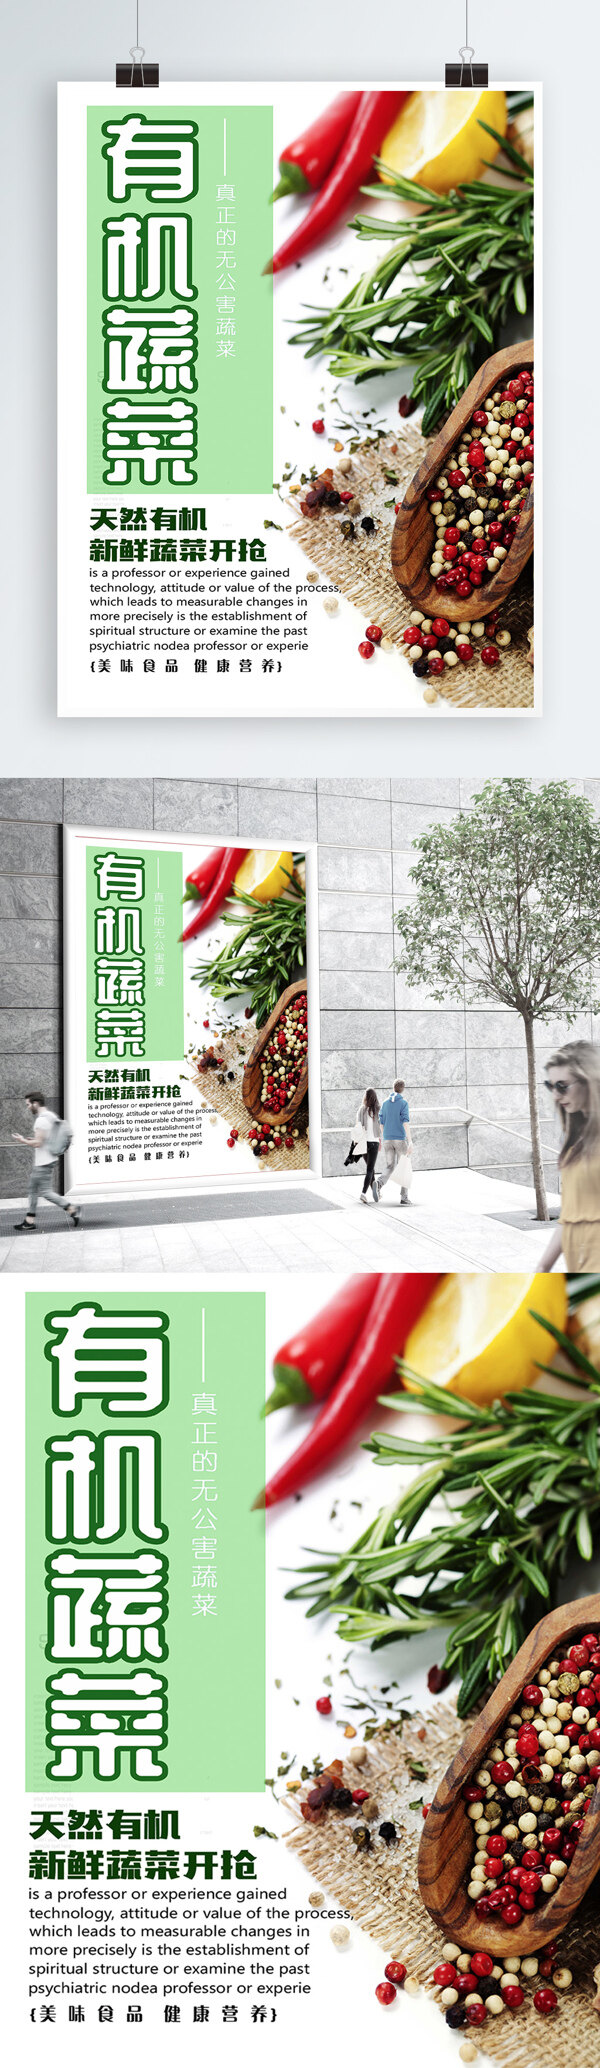 白色背景简约大气绿色有机蔬菜宣传海报